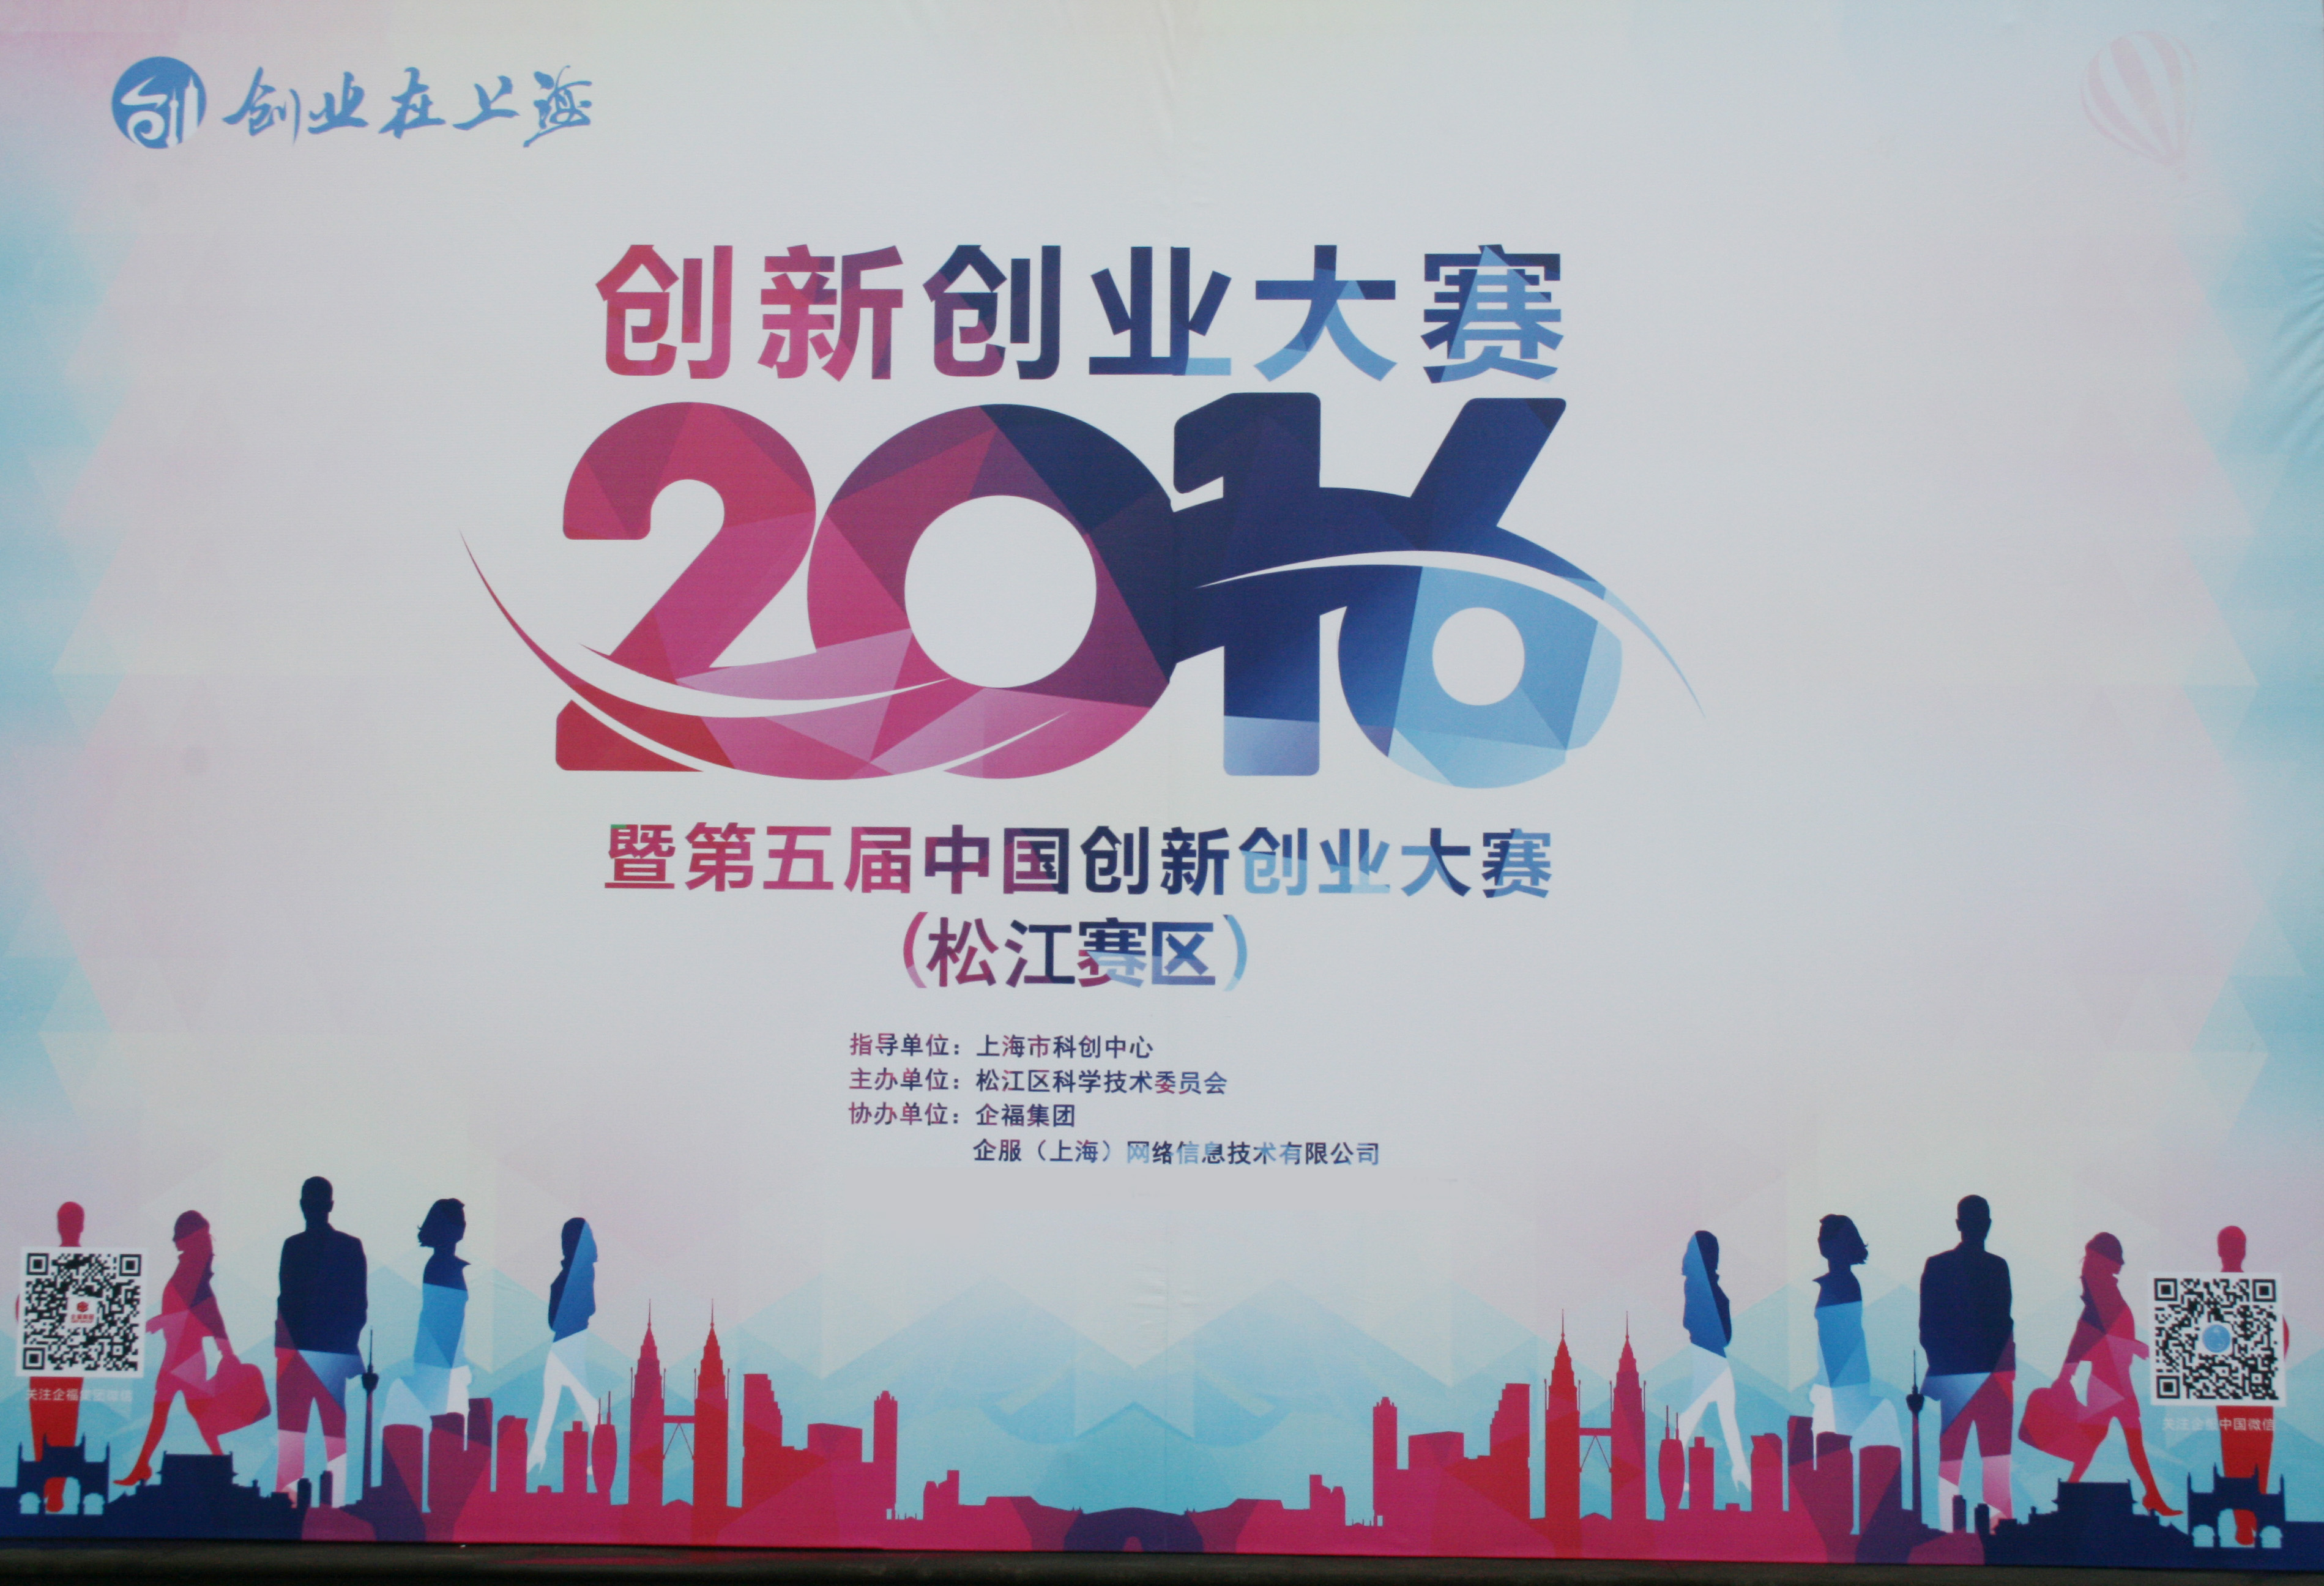 2016年6月，企福集团二次承办上海创新创业大赛 松江分赛